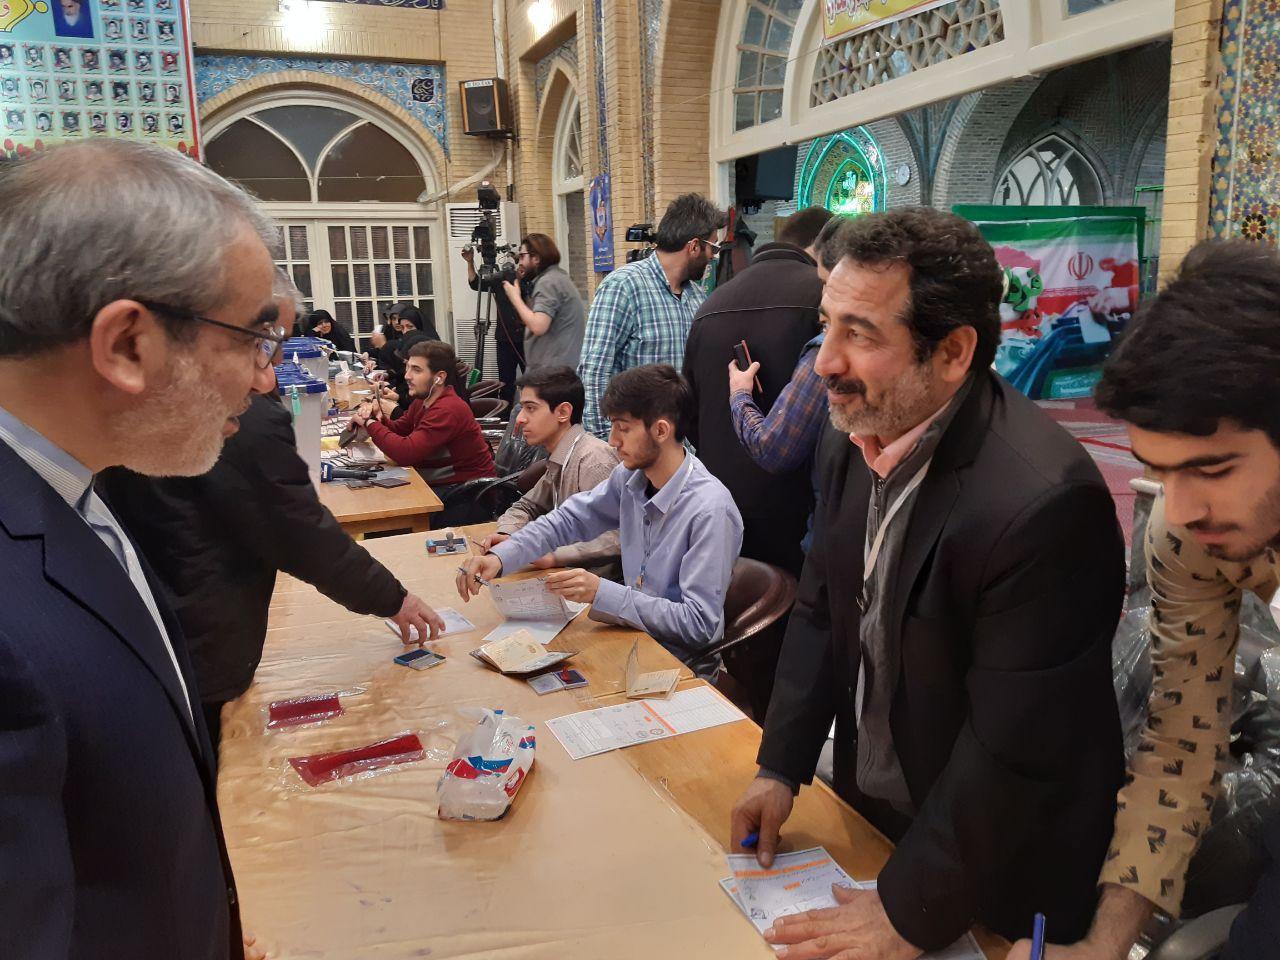 حضور و بازدید سرزده قائم مقام دبیر شورای نگهبان از شعبه اخذ رای در مسجد لرزاده